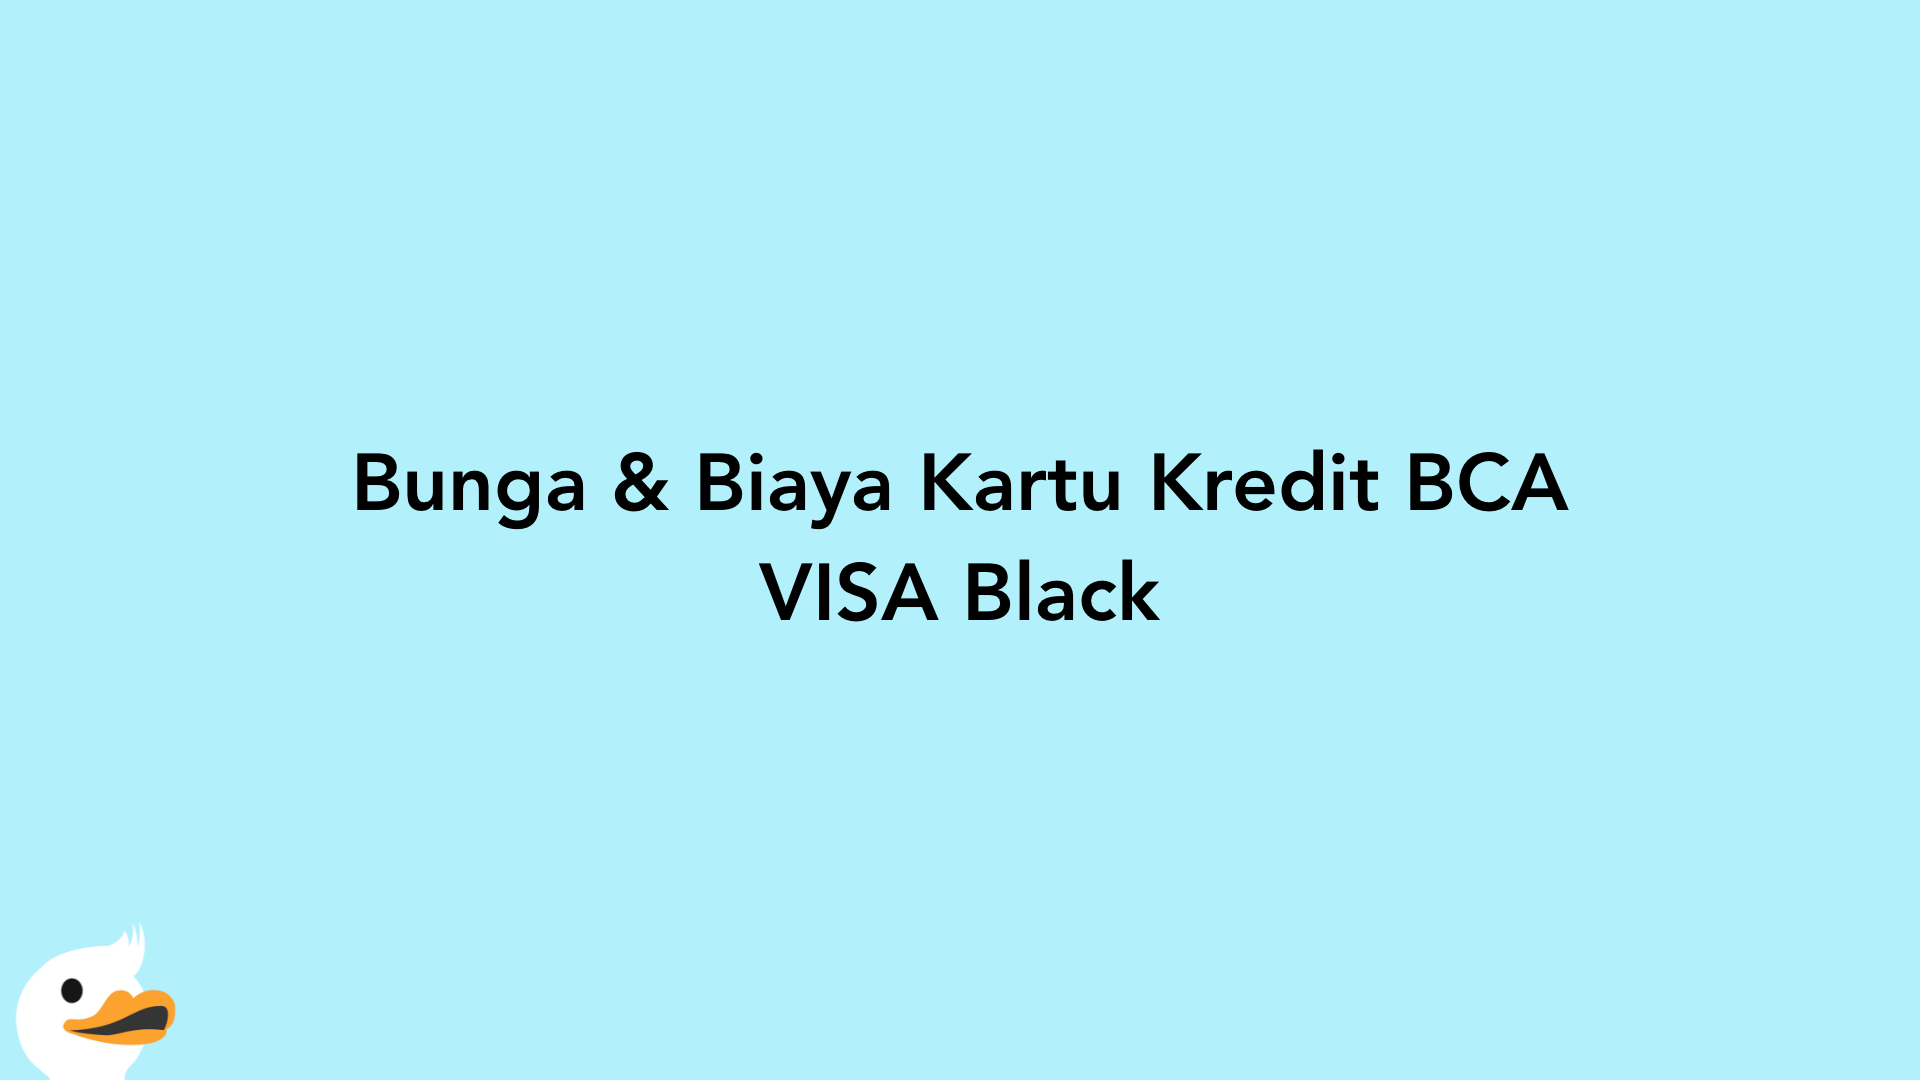 Bunga & Biaya Kartu Kredit BCA VISA Black